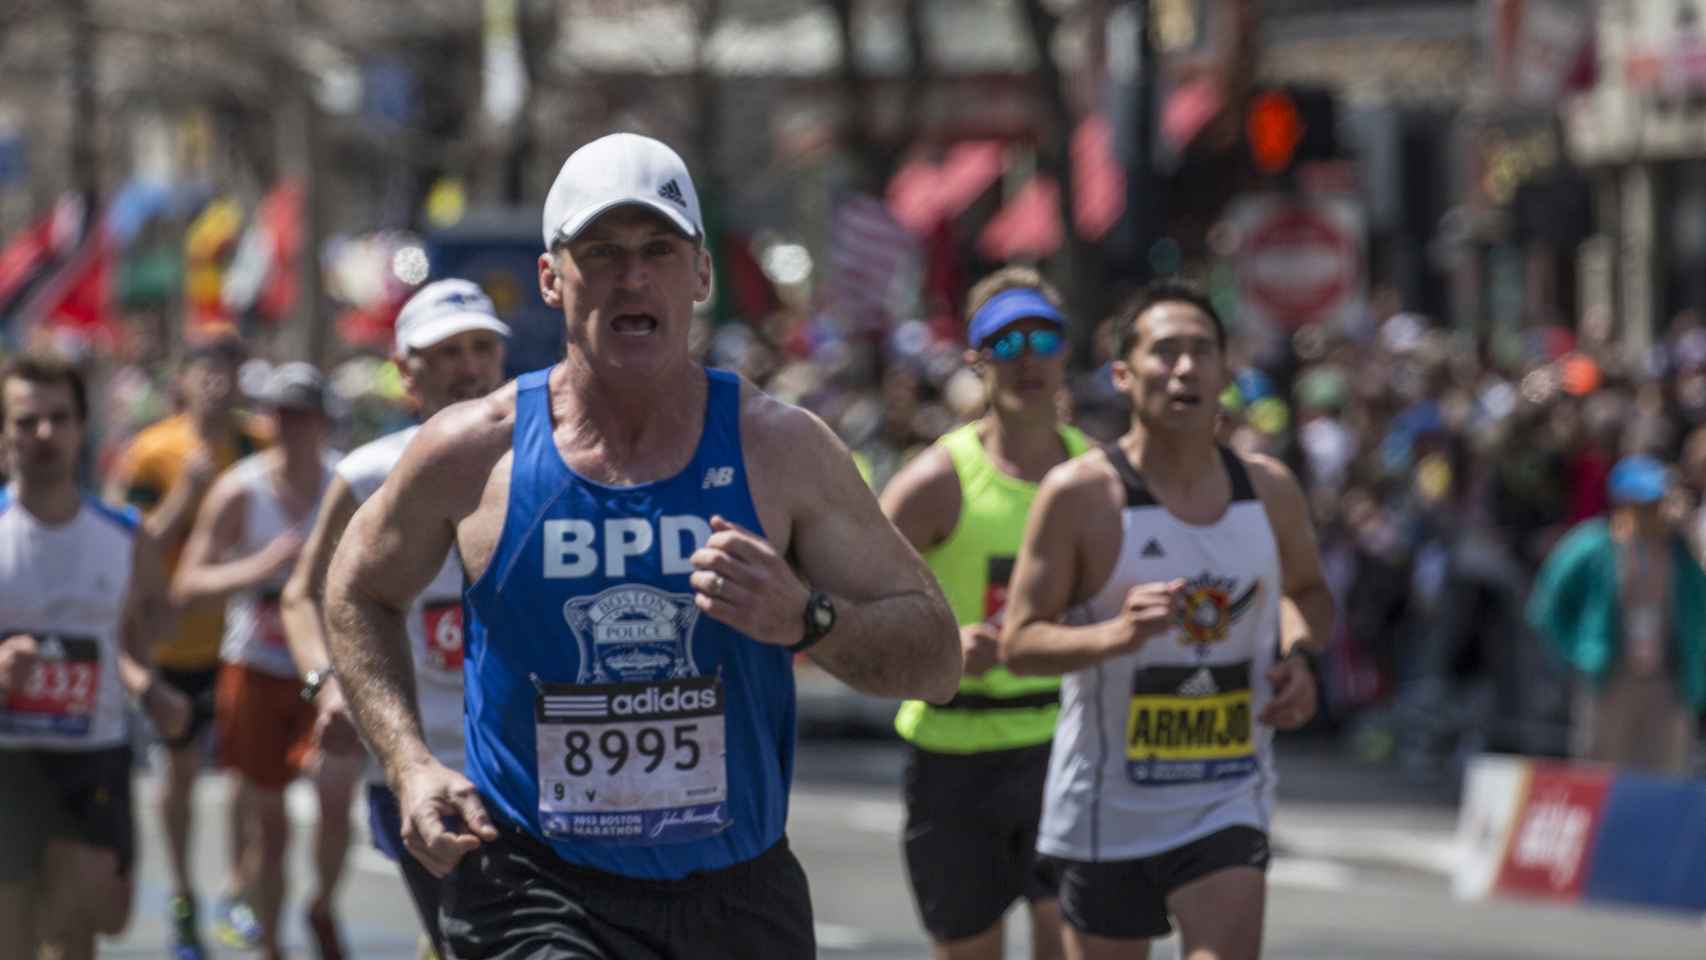 Maratón de Boston.